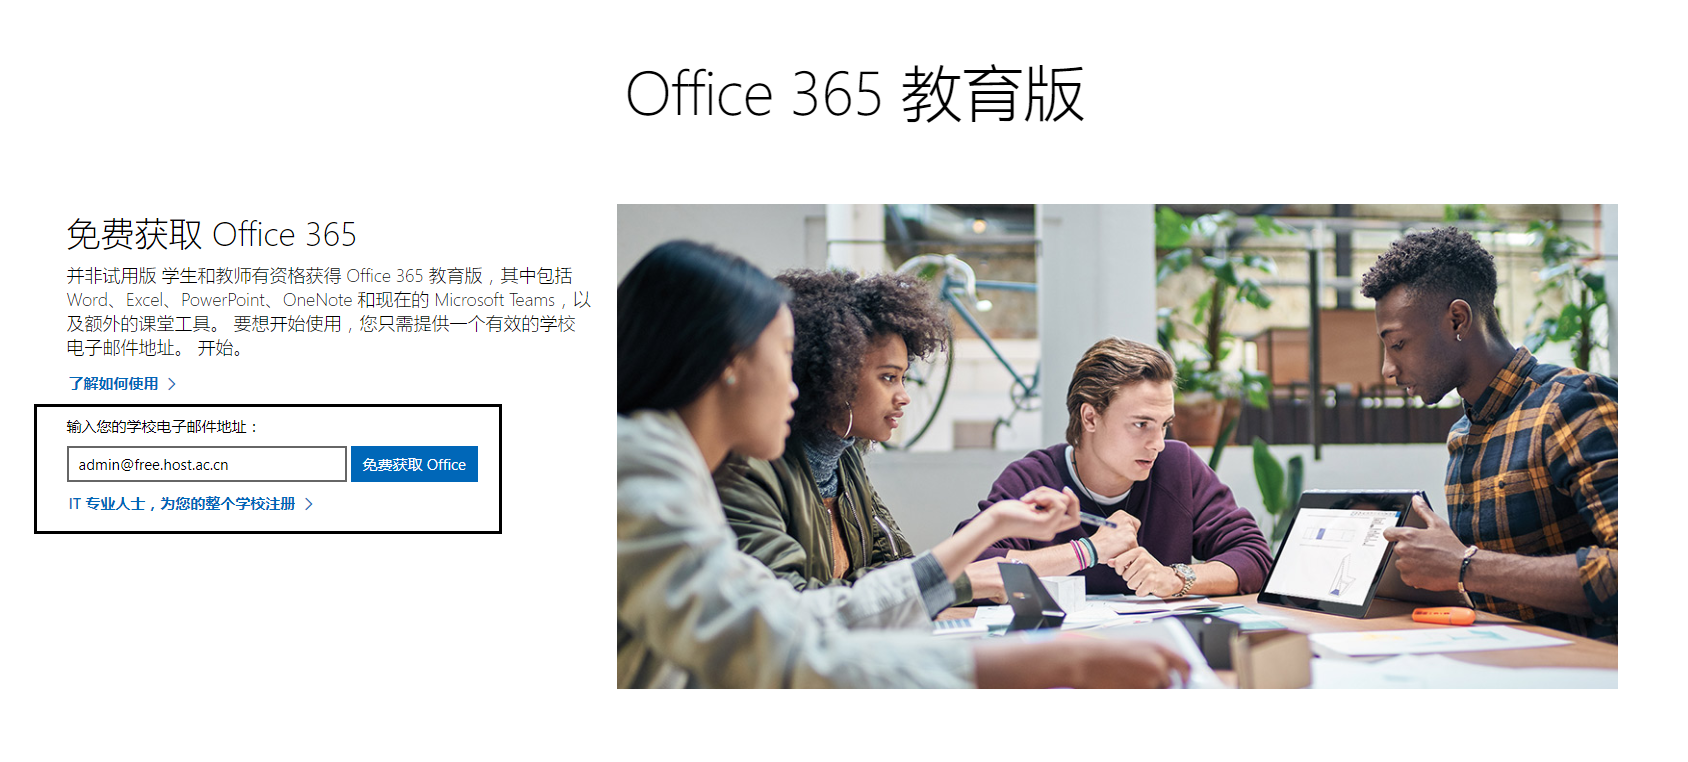 免费发放 Office 365 A1 帐号